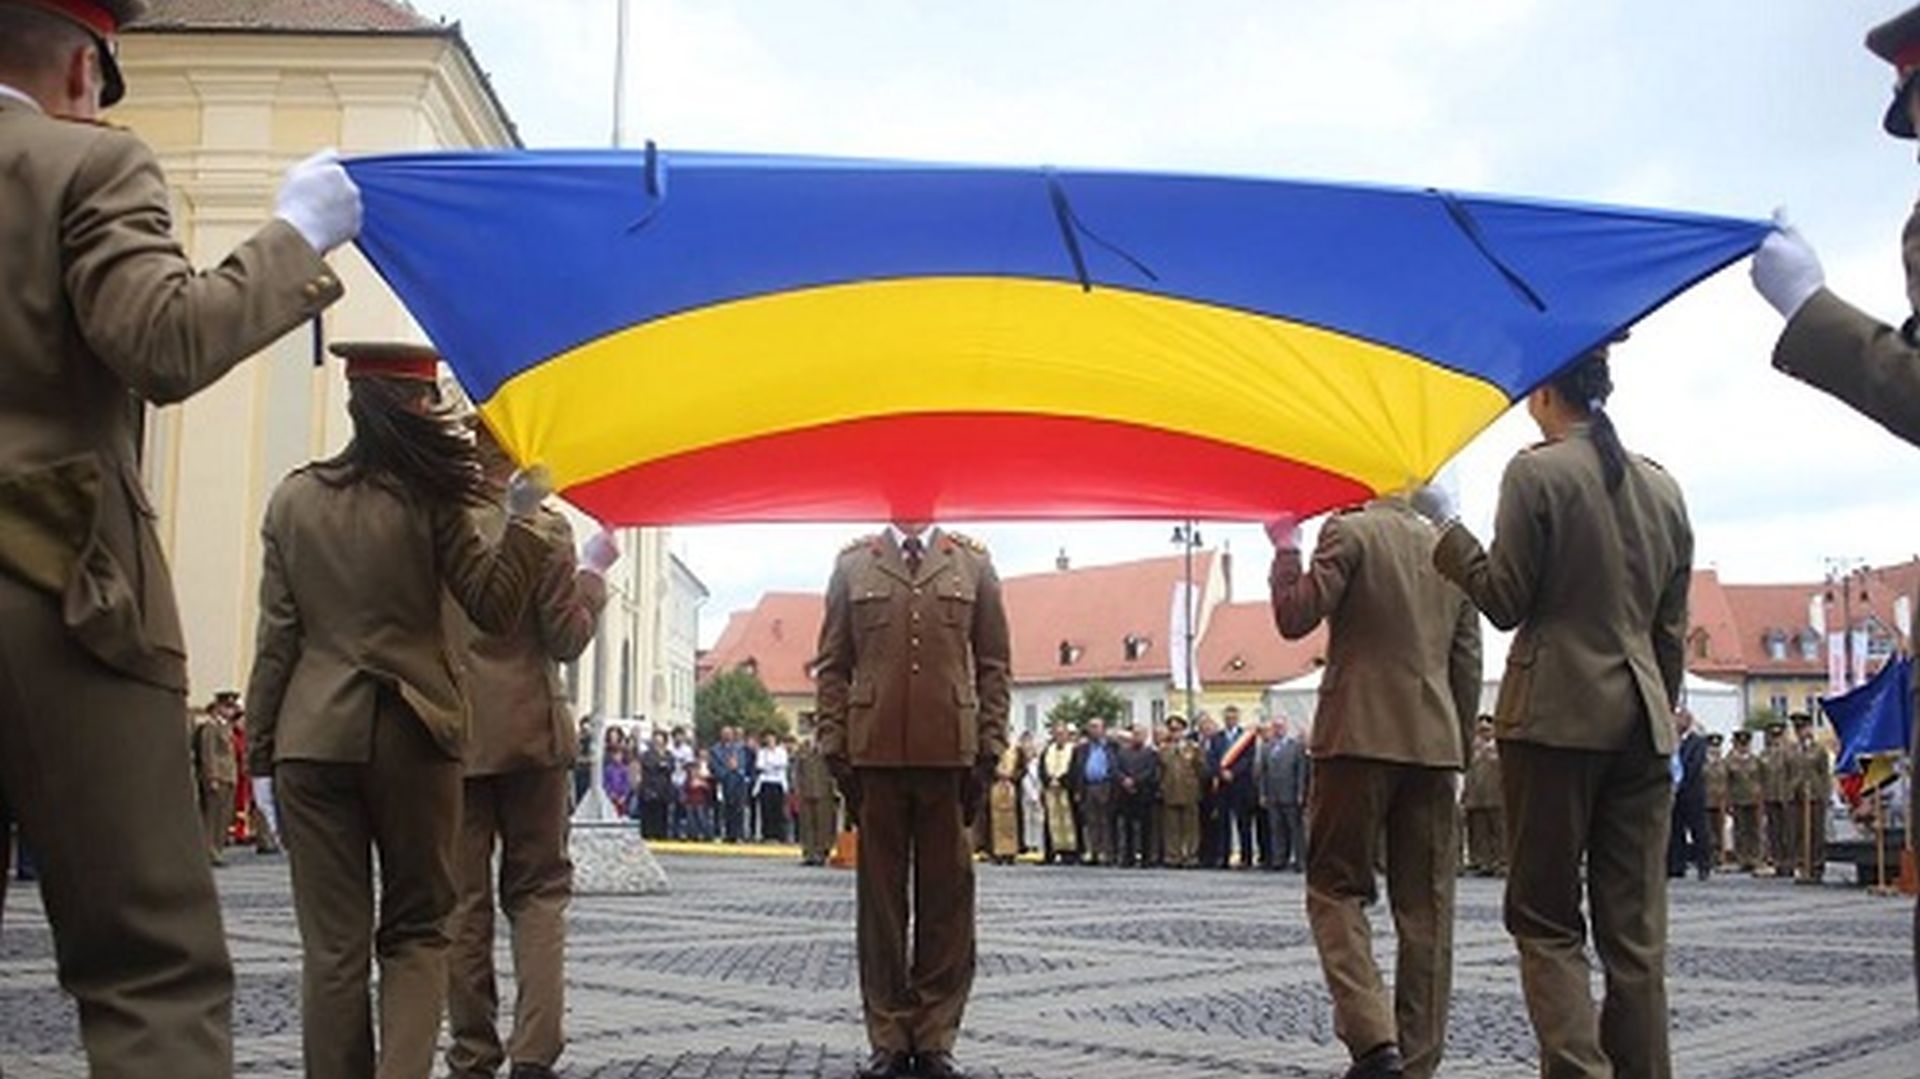 A román zászló kitűzésére buzdít a honvédelem